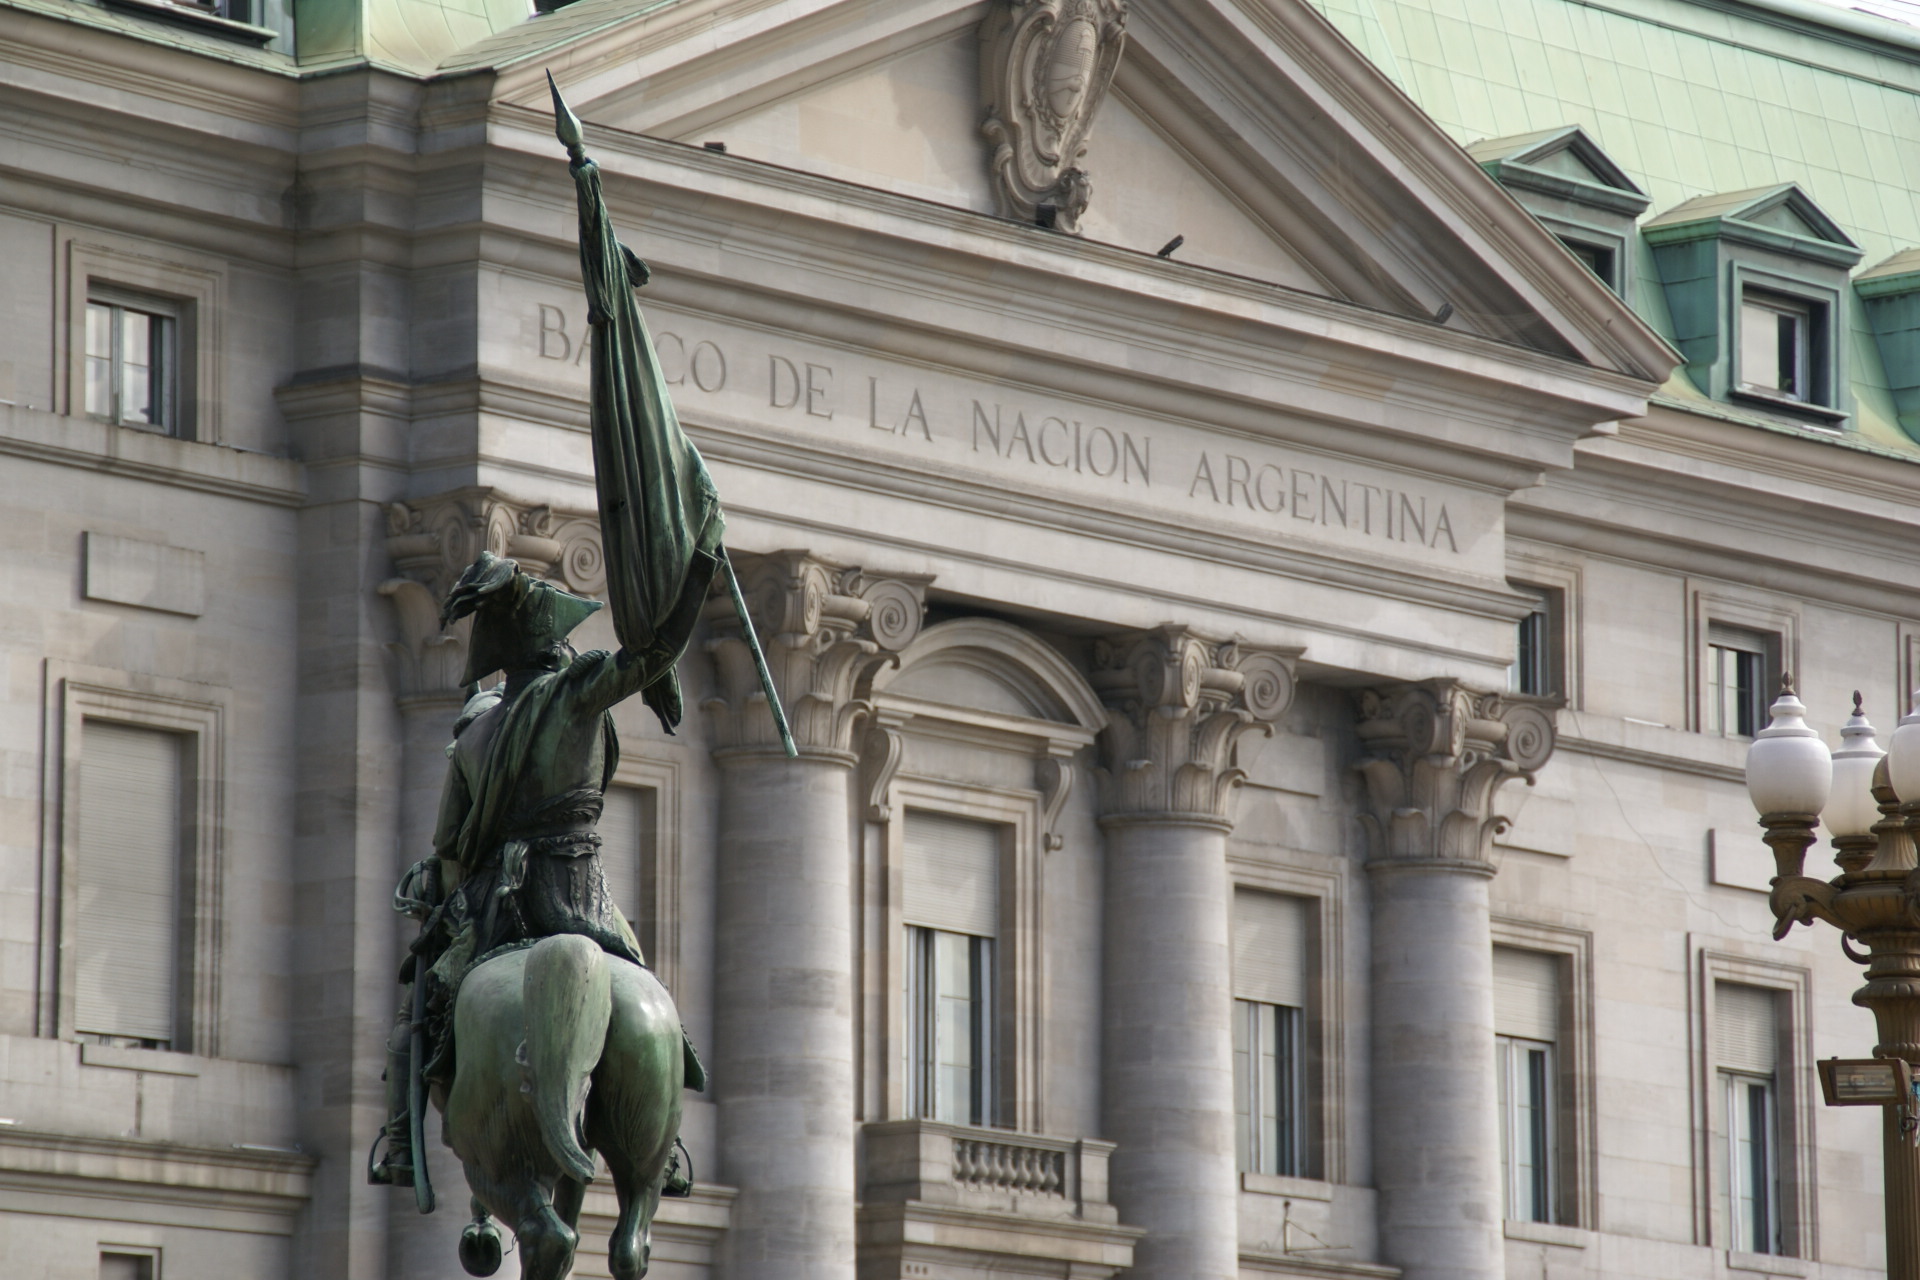 Banco de la Nación and equestrian monument to Manuel Belgrano at Plaza de Mayo - Buenos Aires, Argentina, 17.10.2011